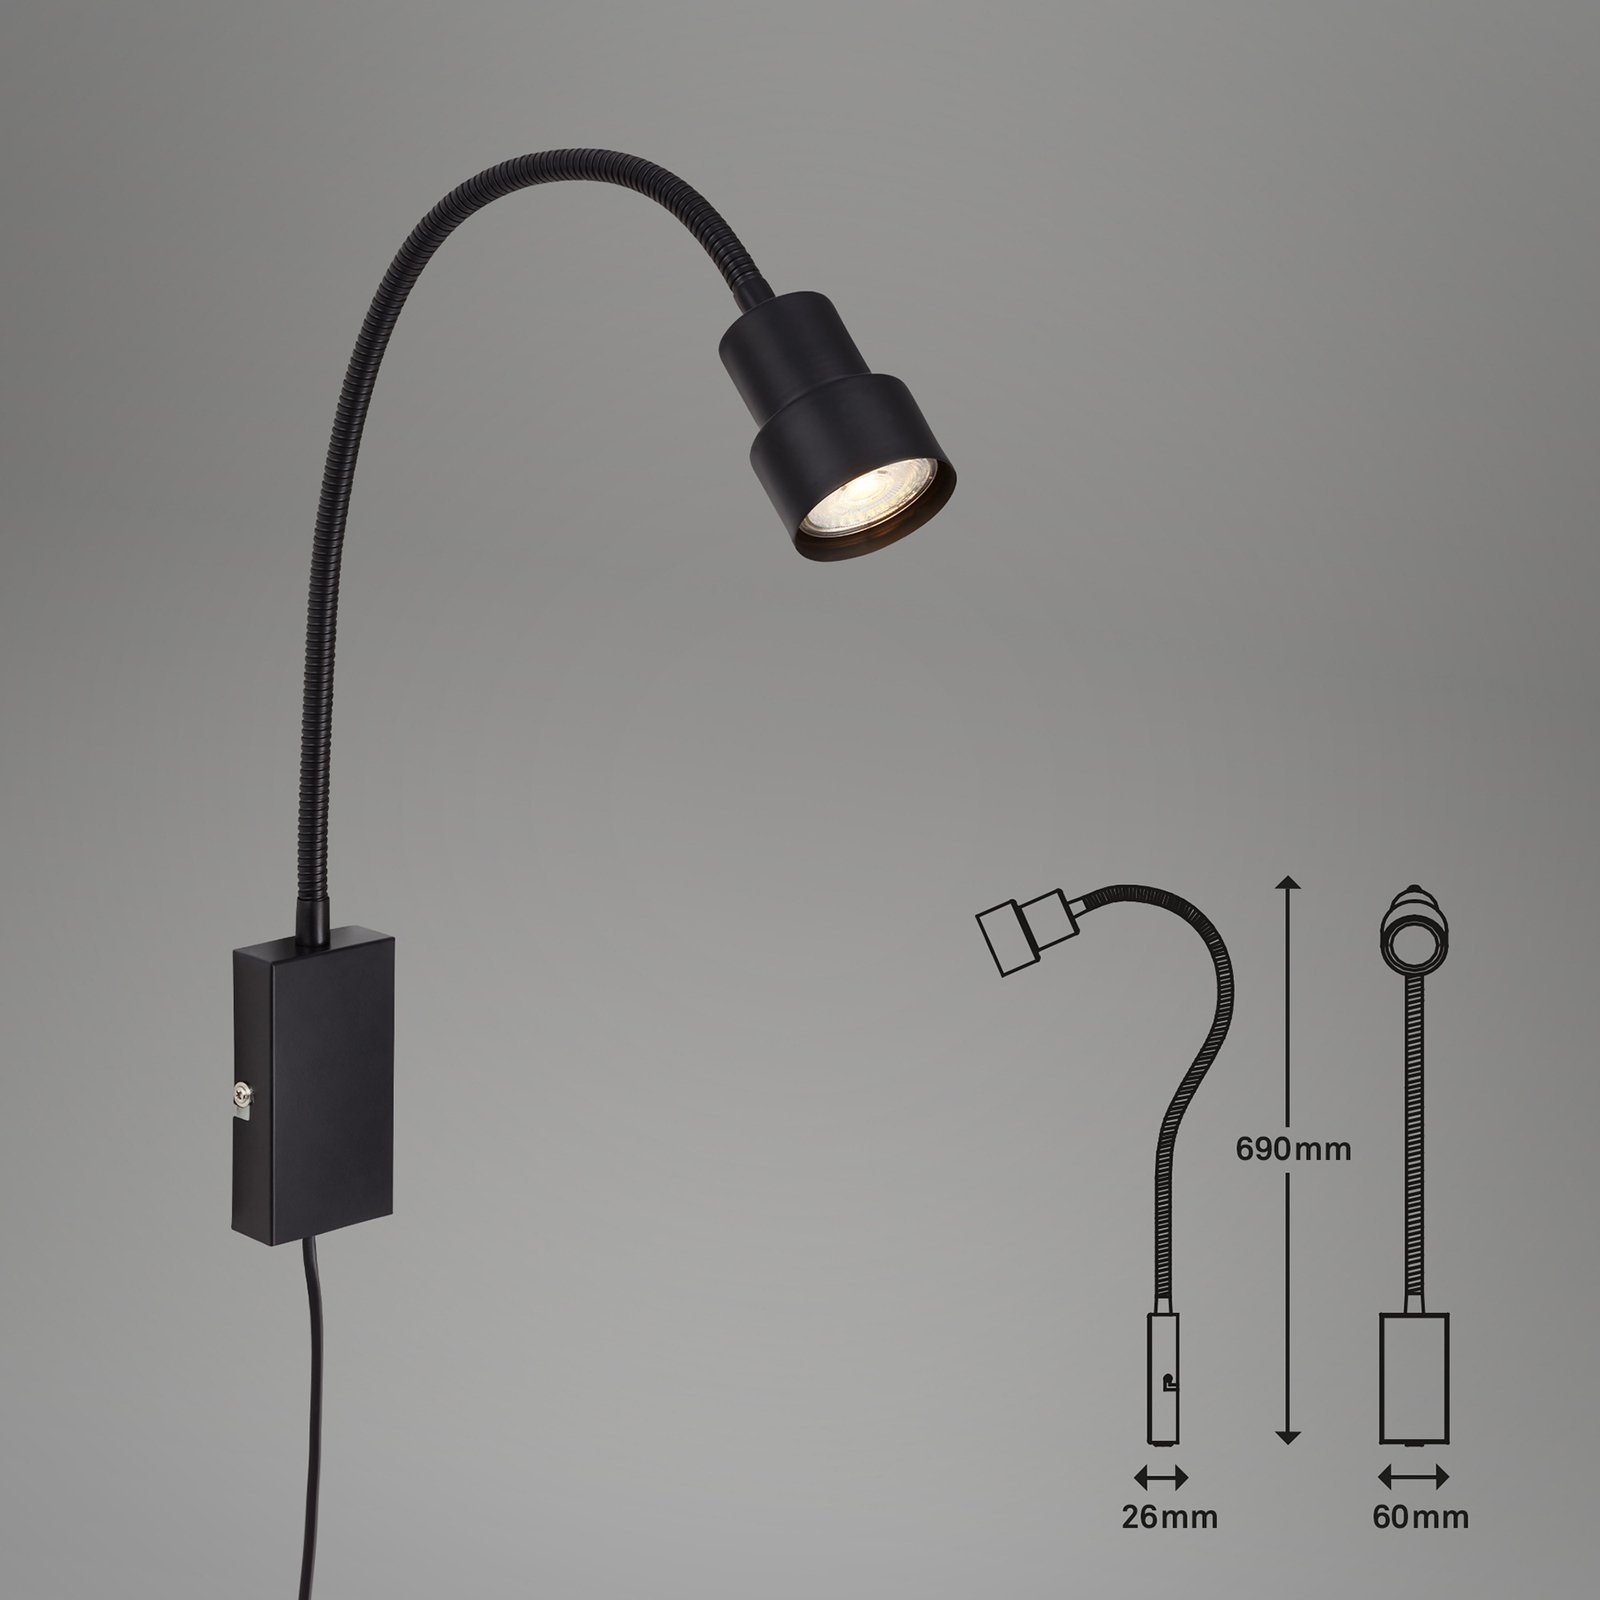 Tusi LED wall light, flexible arm, black